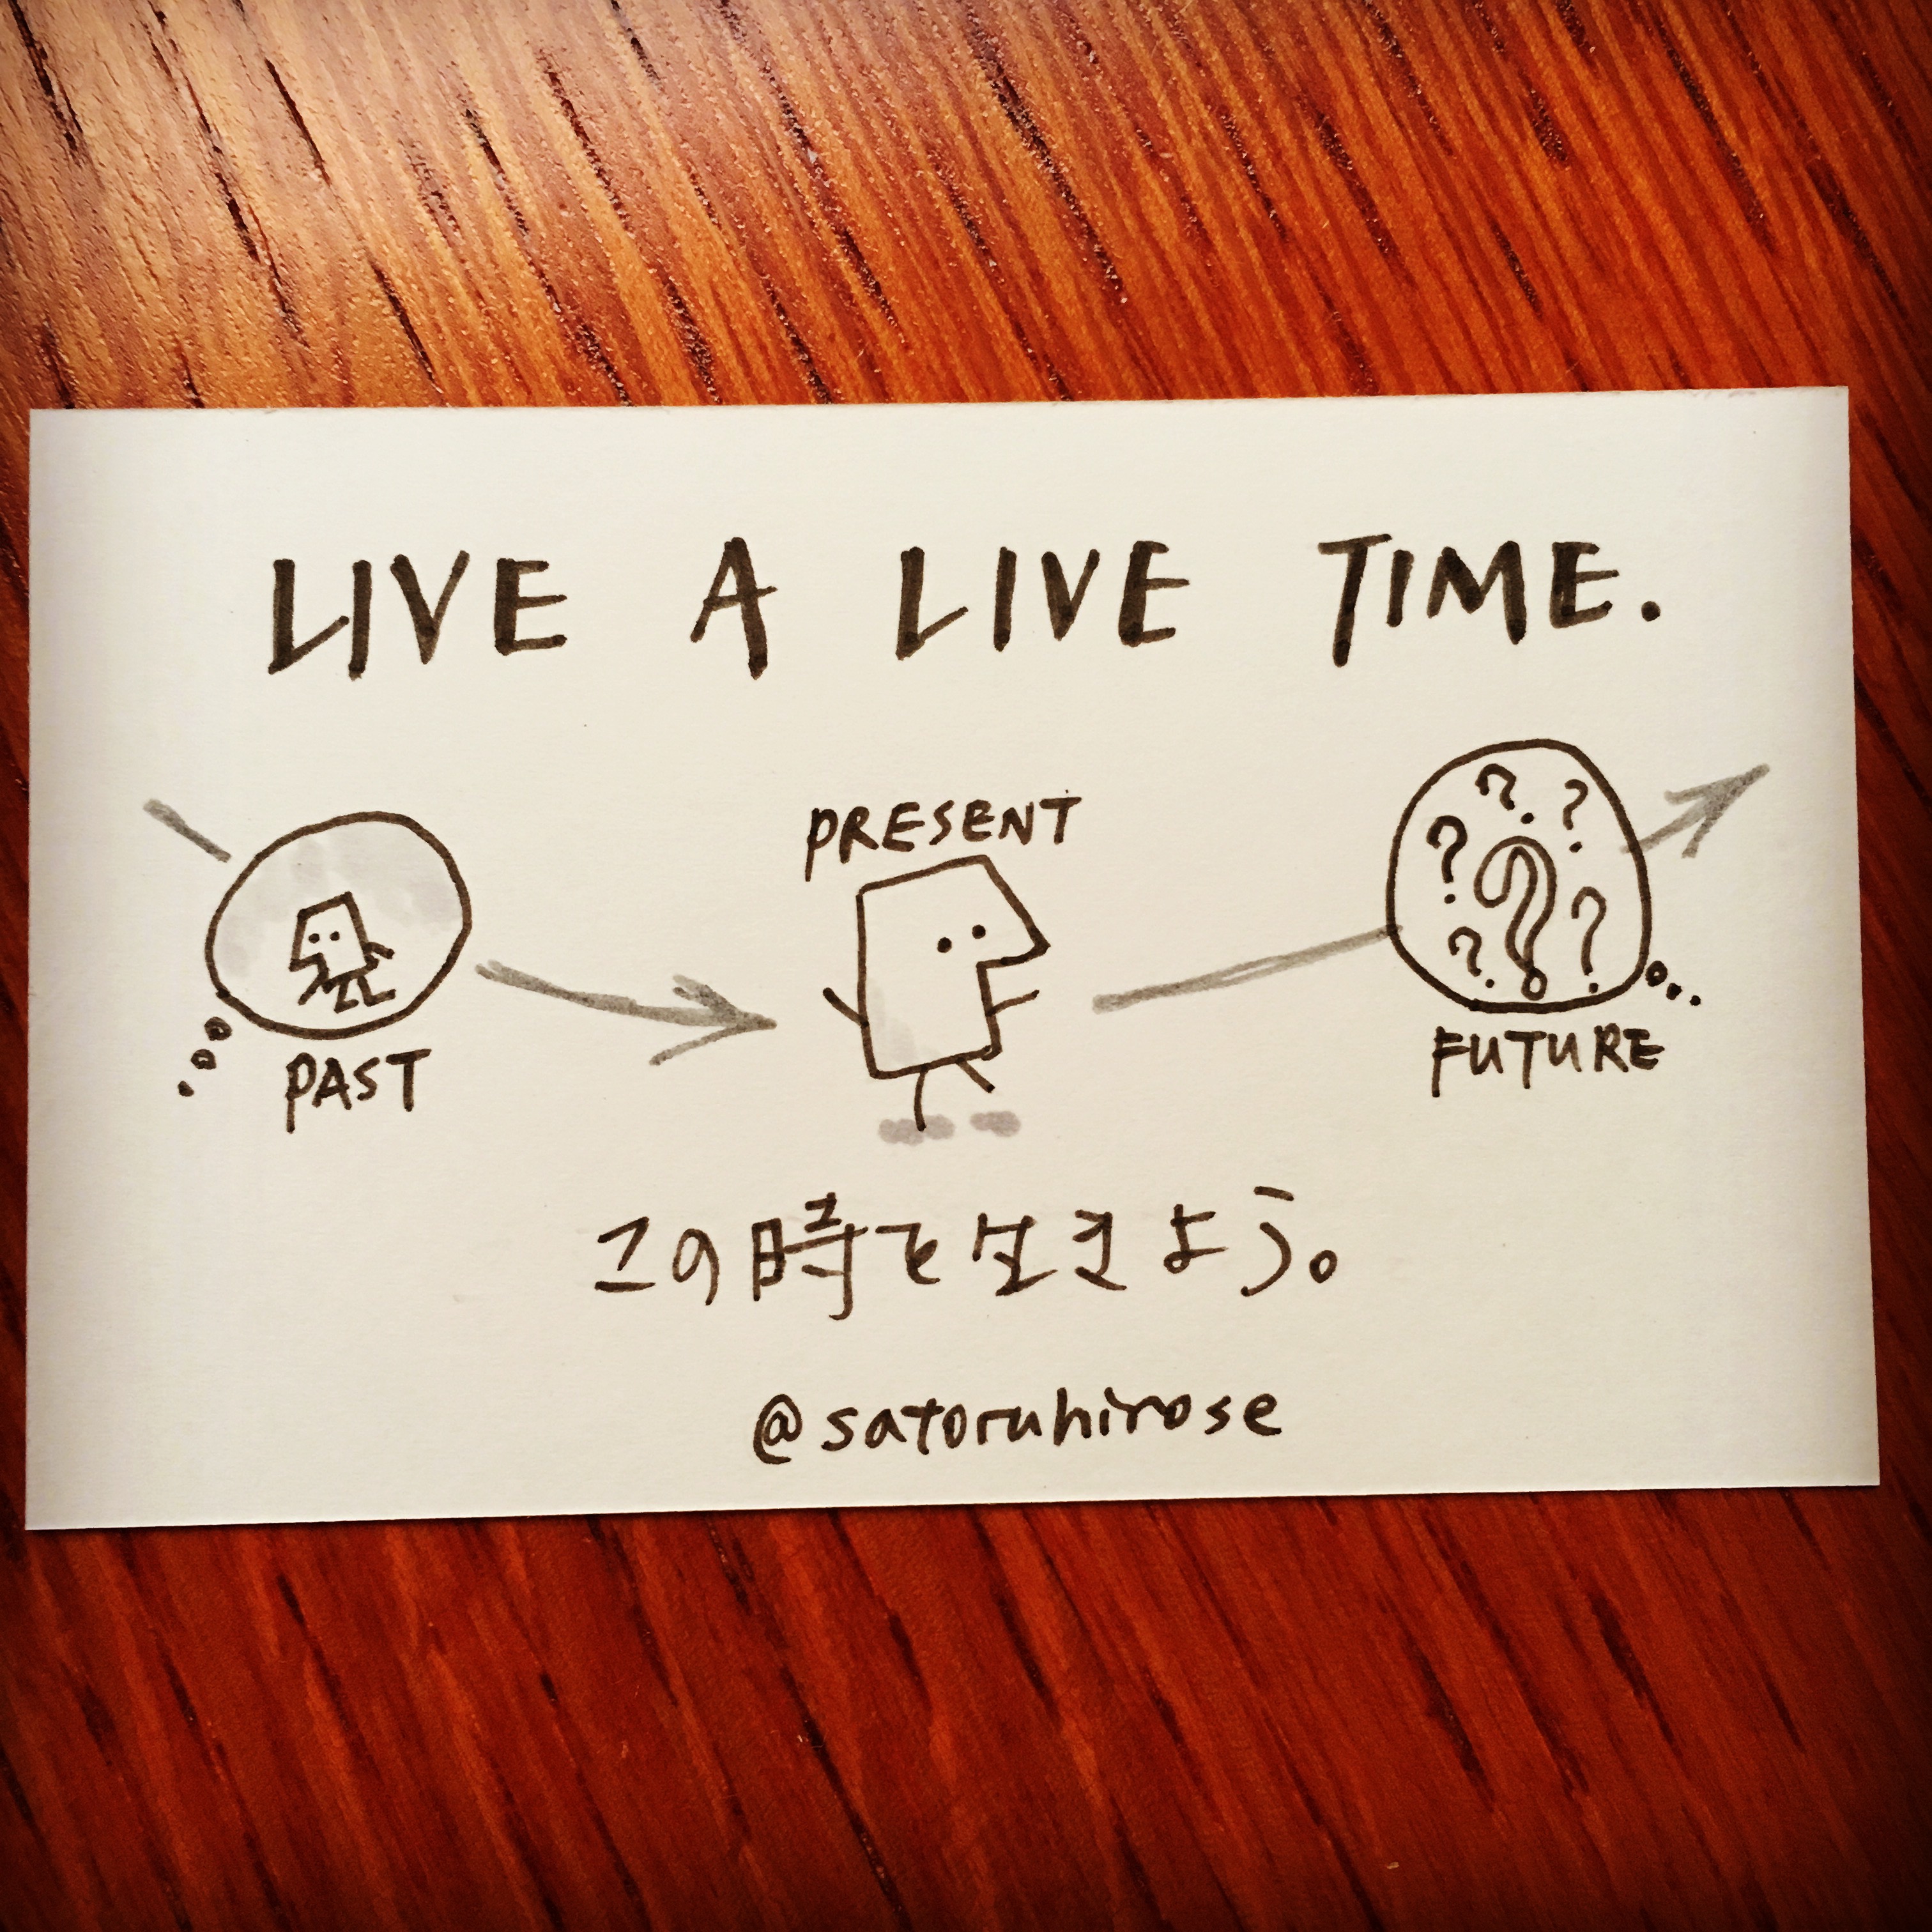 Live a live time.